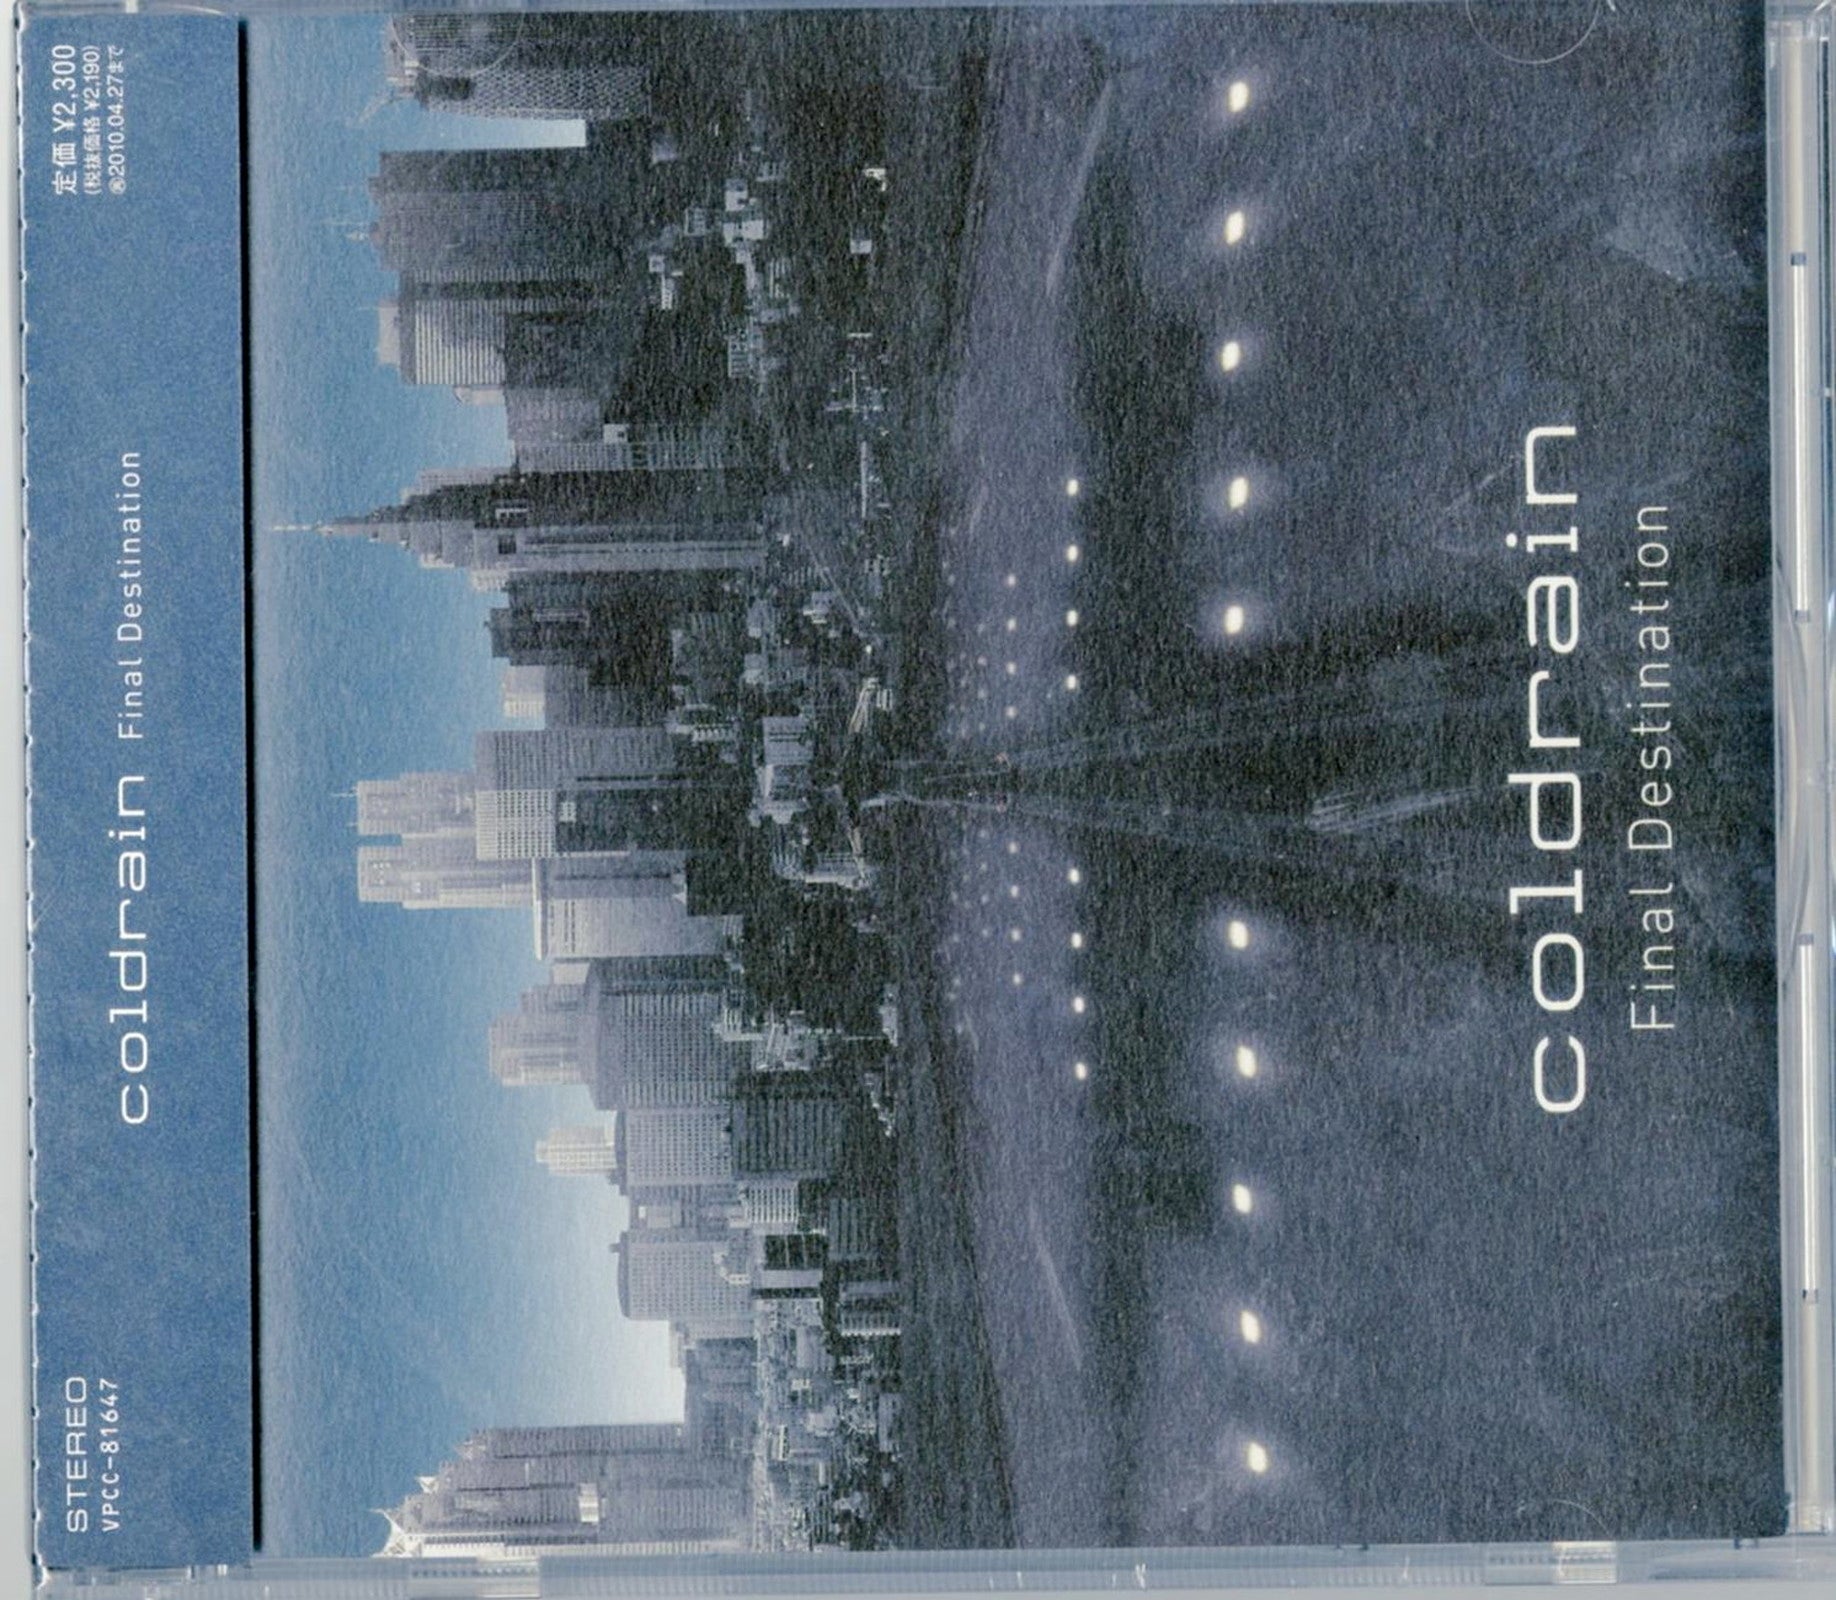 Coldrain - Final Destination - Japan CD – CDs Vinyl Japan Store 